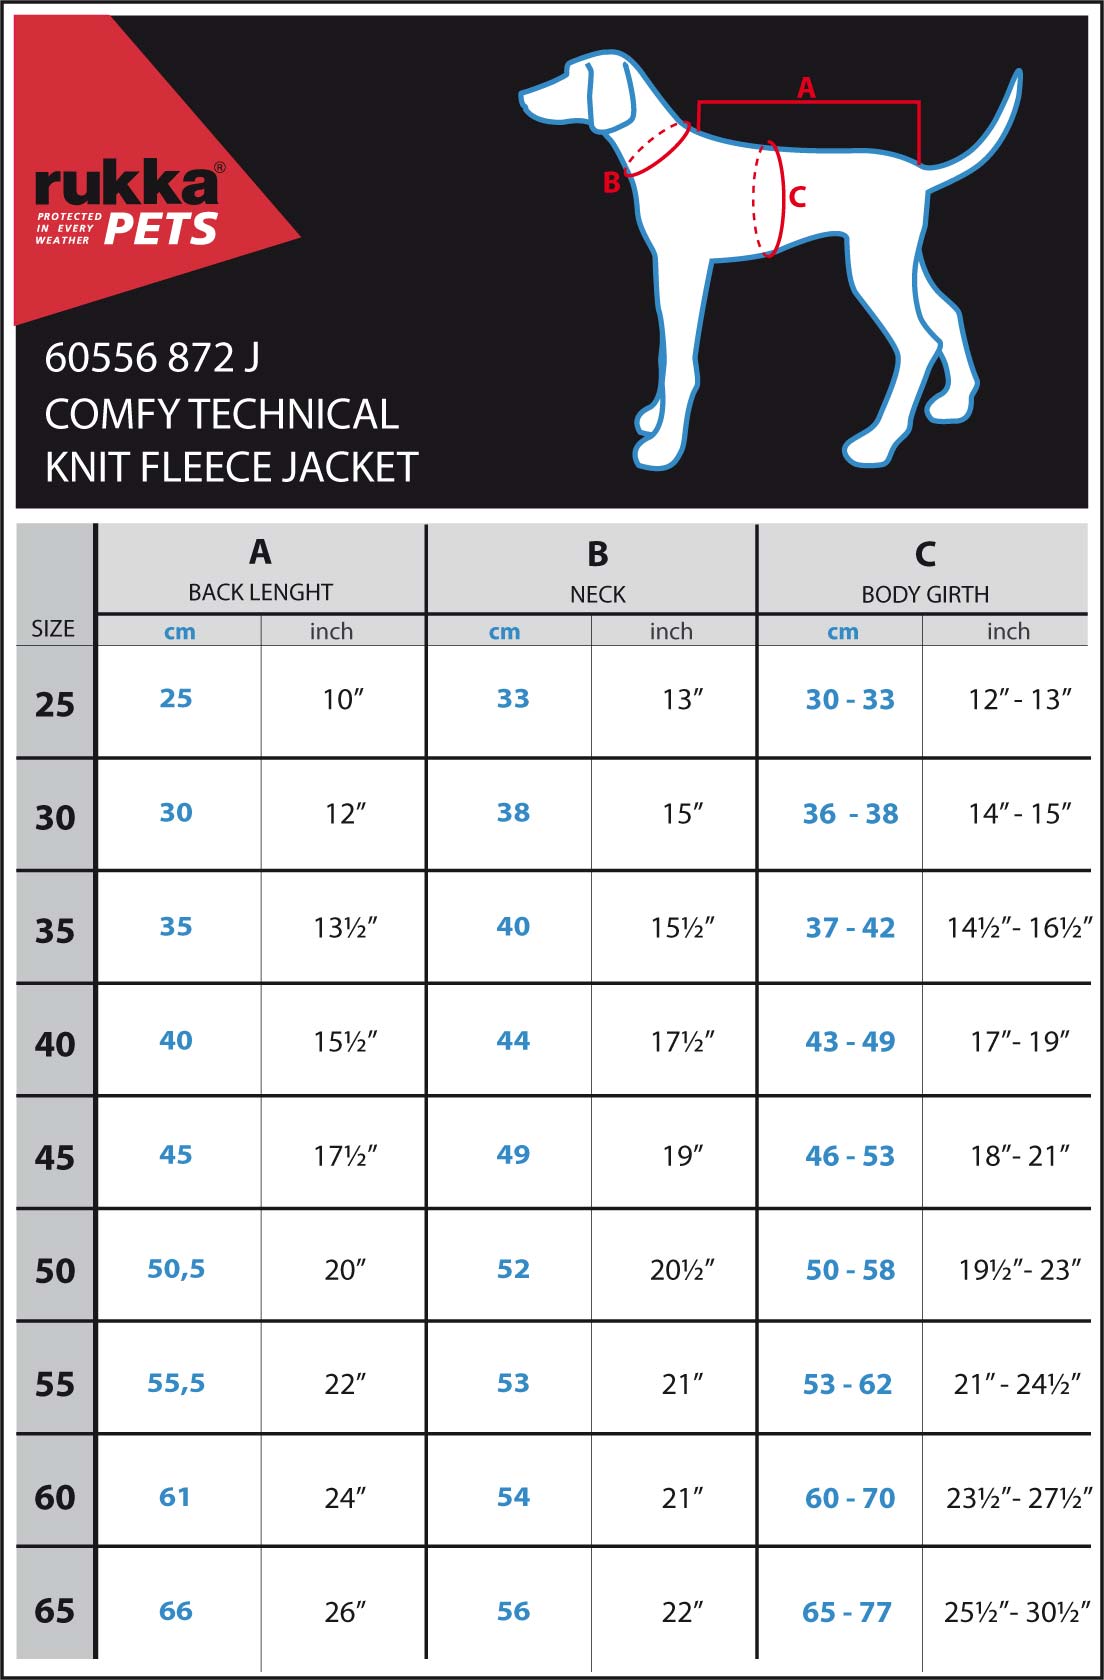 comfy-technical-knit-fleece-jacket-maattabelOMRM1mnnmbbsN